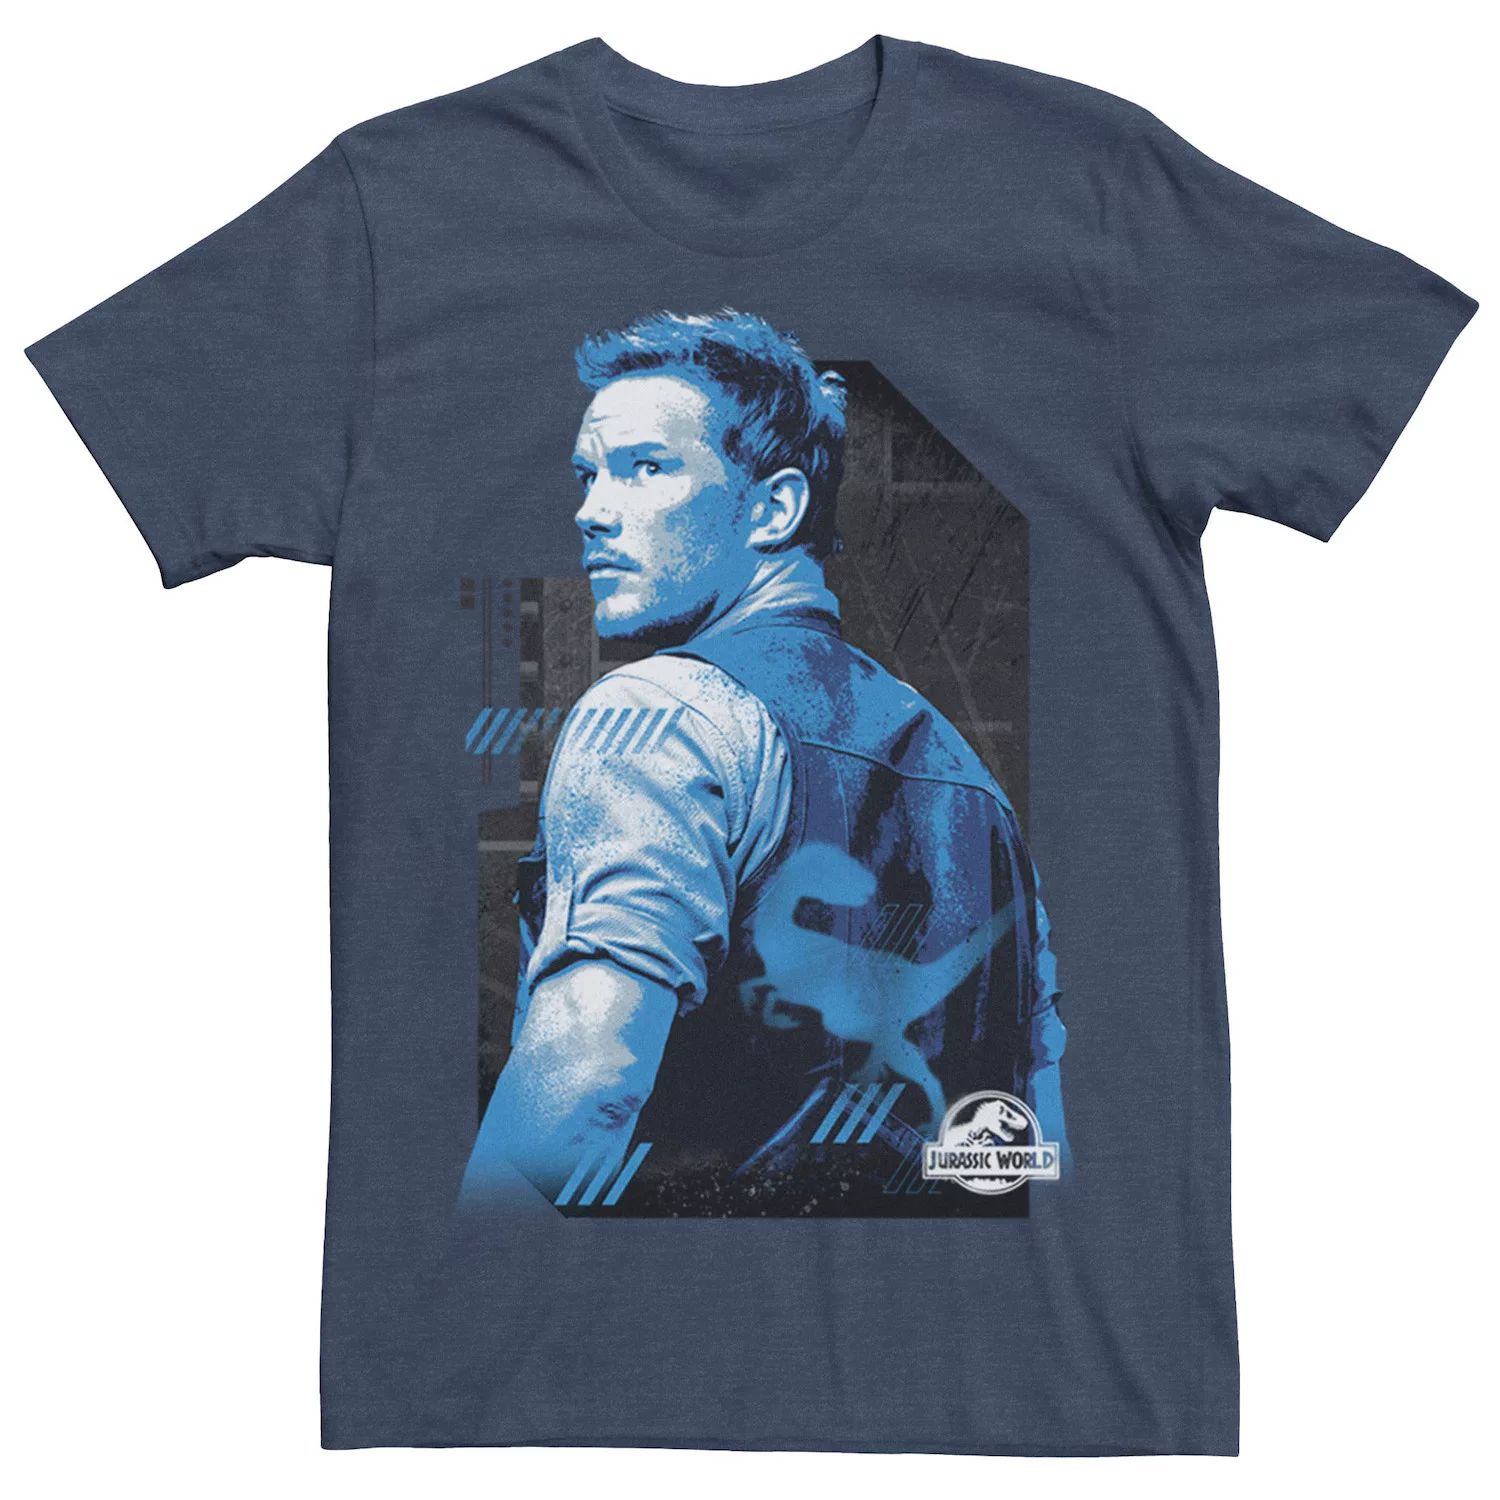 цена Мужская синяя футболка с портретом Owen Jurassic World